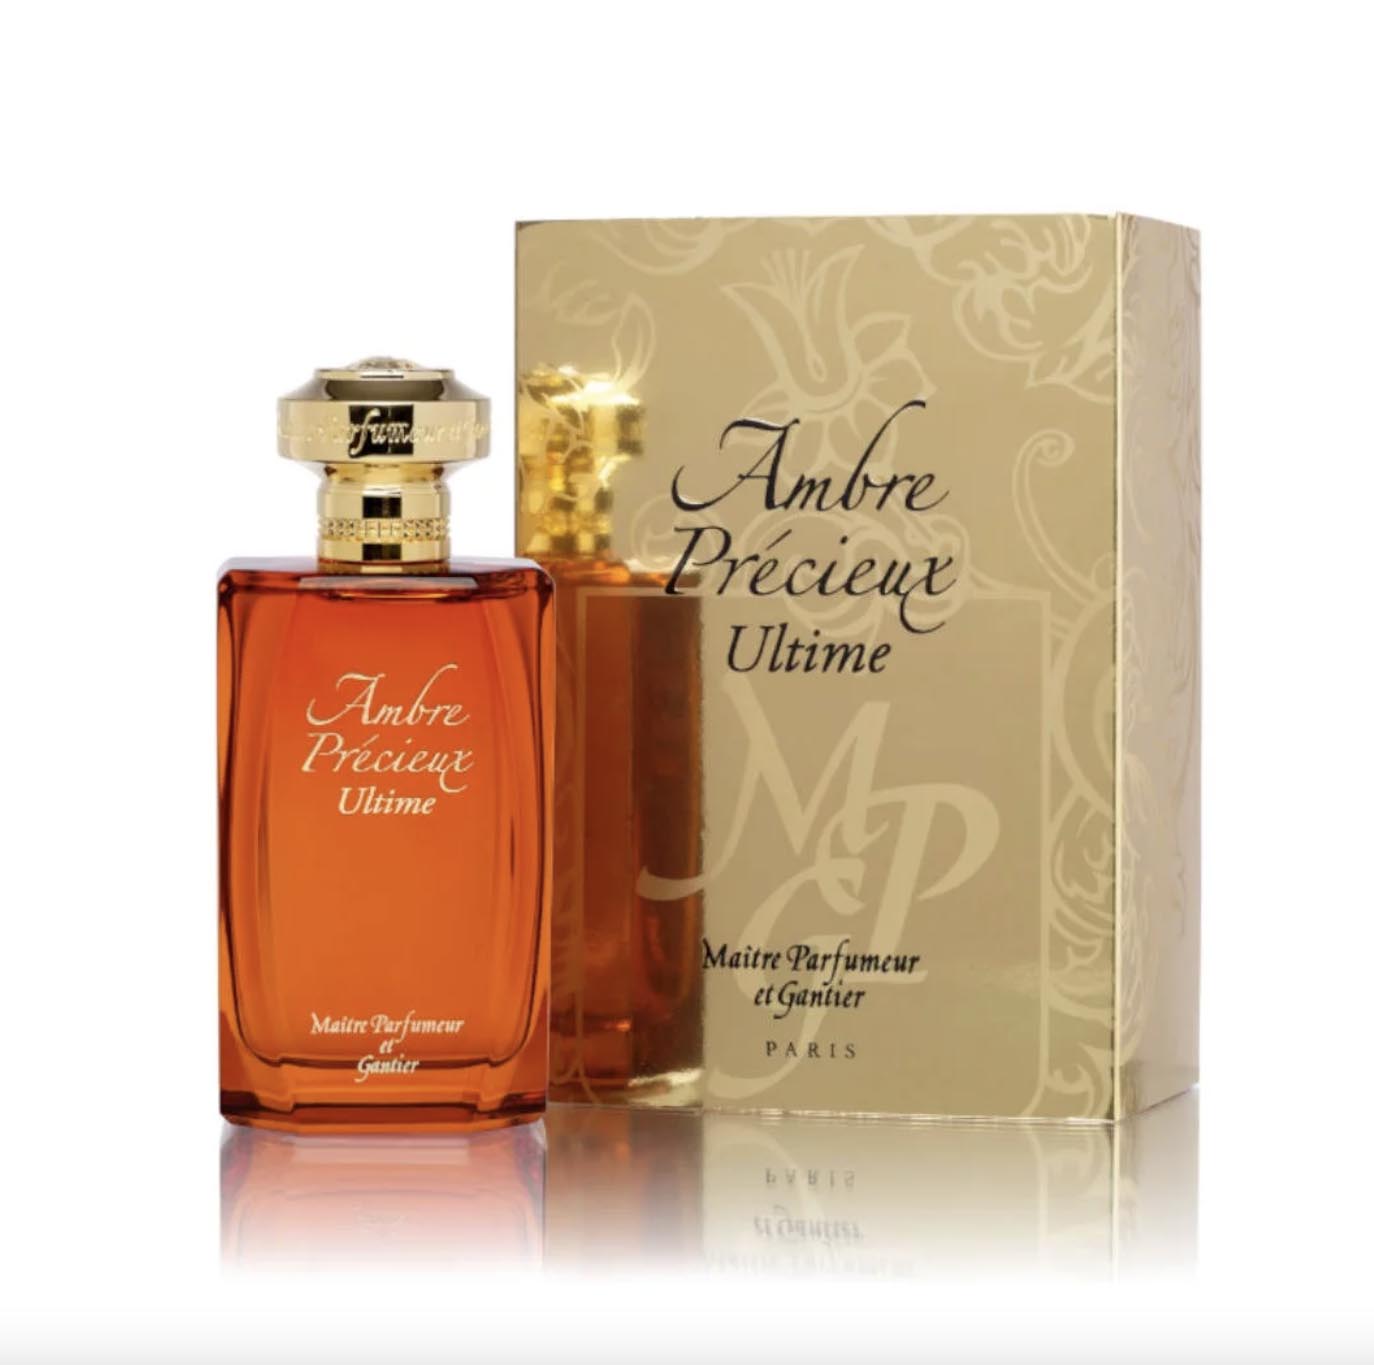 Ambre Precieux Ultime Parfum Bottle and Box by Maître Parfumeur et Gantier